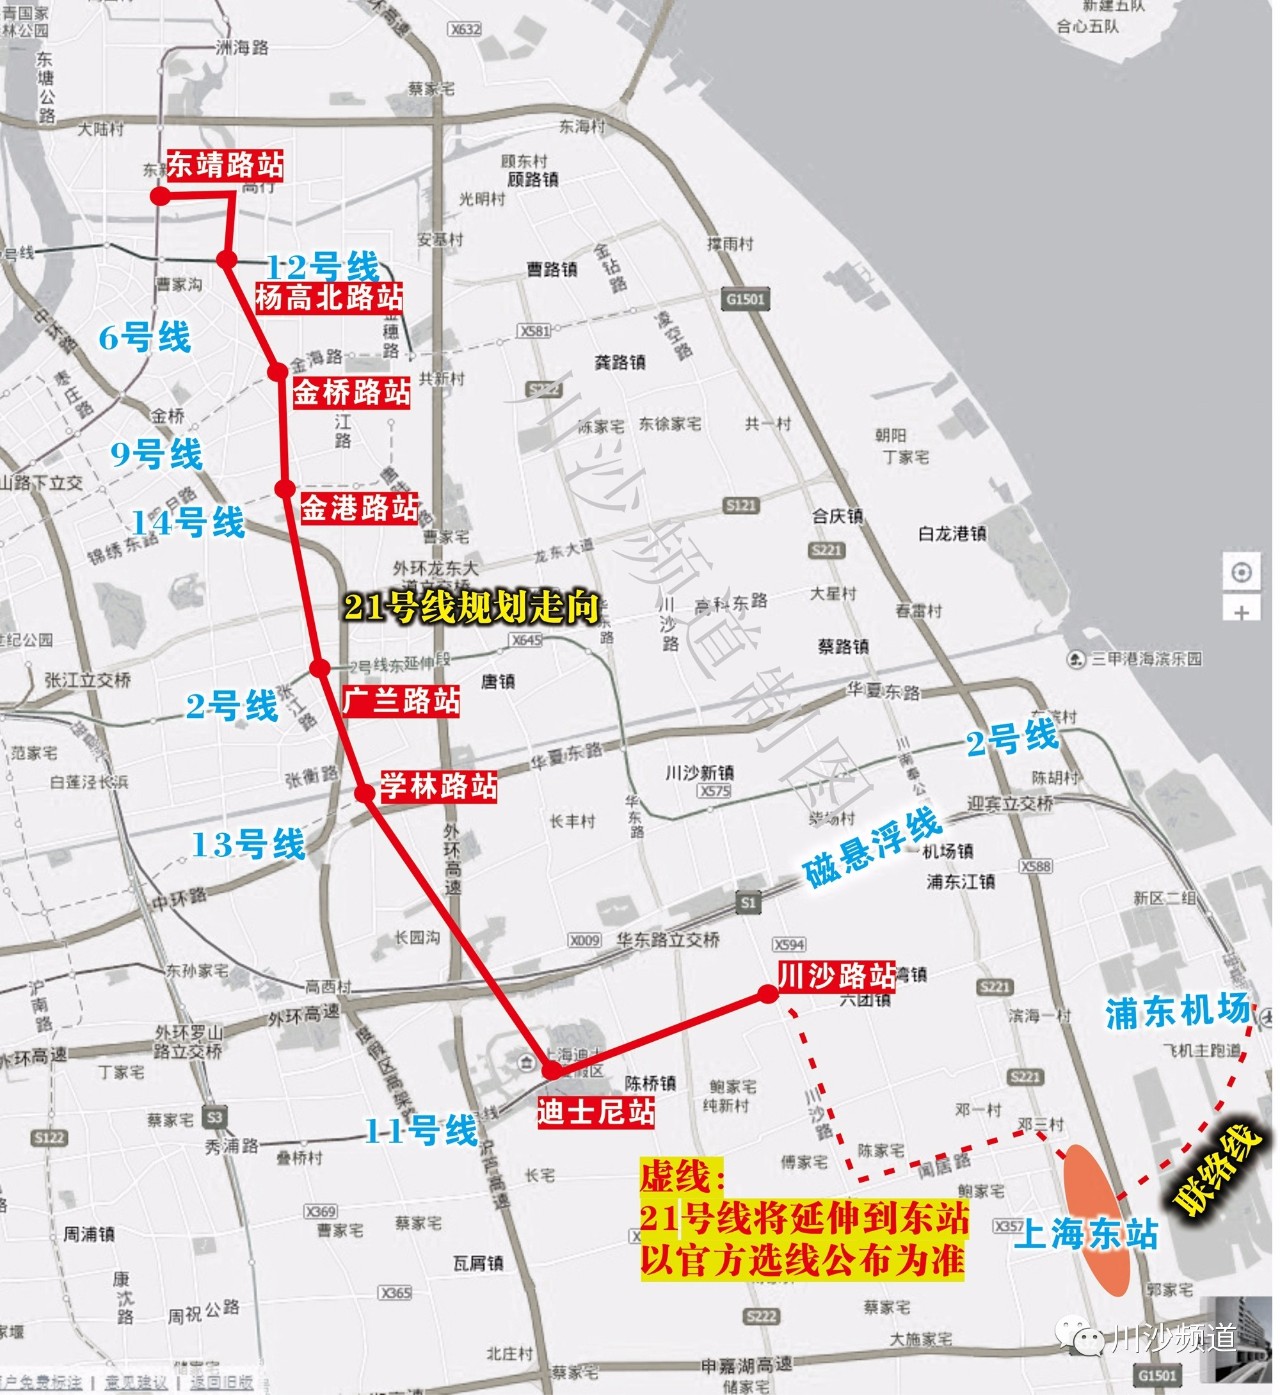 机场联络线从虹桥枢纽至祝桥地区上海东站枢纽,主要服务于虹桥枢纽